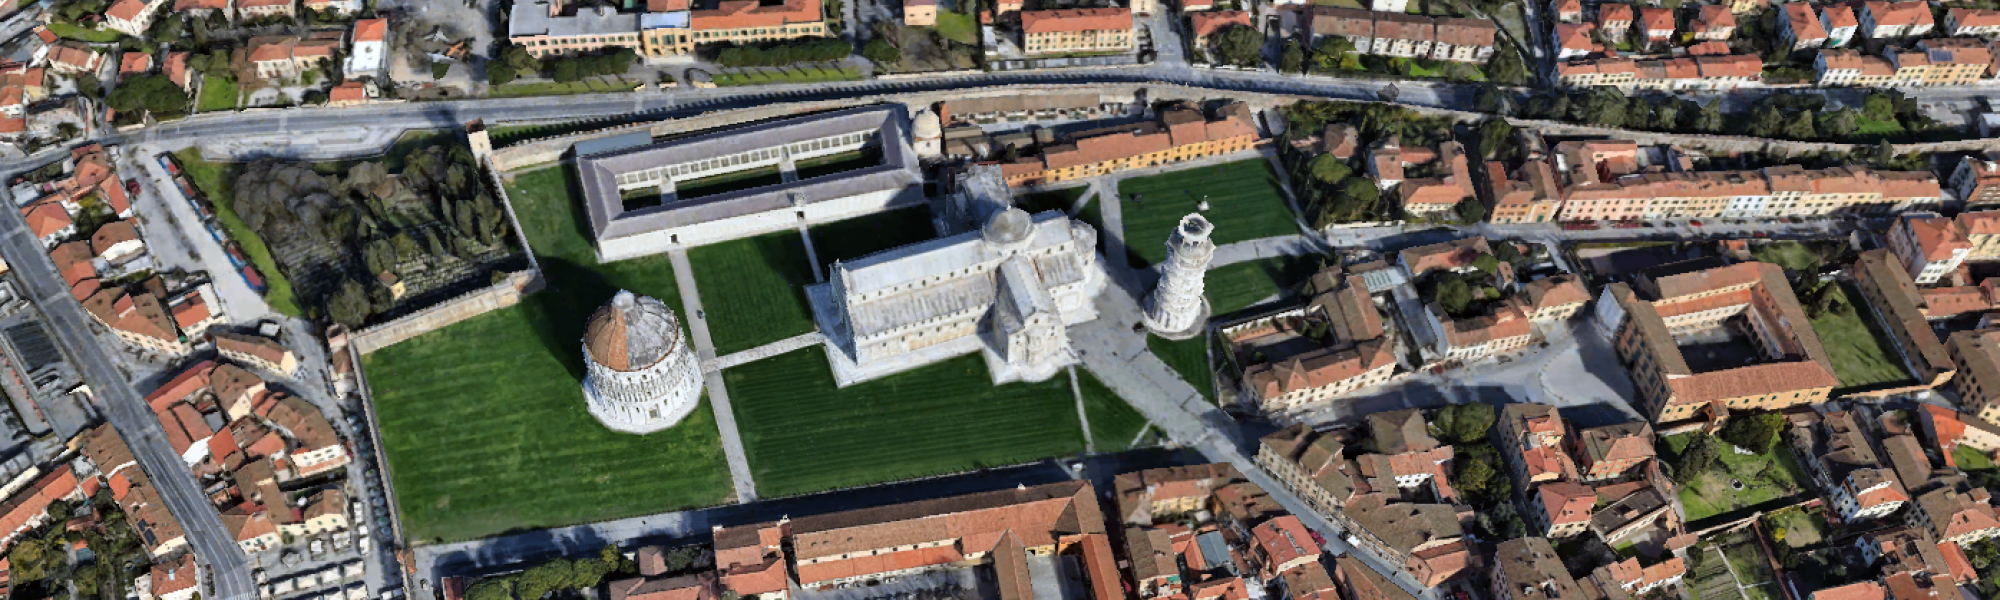 Piazza del Duomo a Pisa vista dal'alto (fonte: Google Earth)